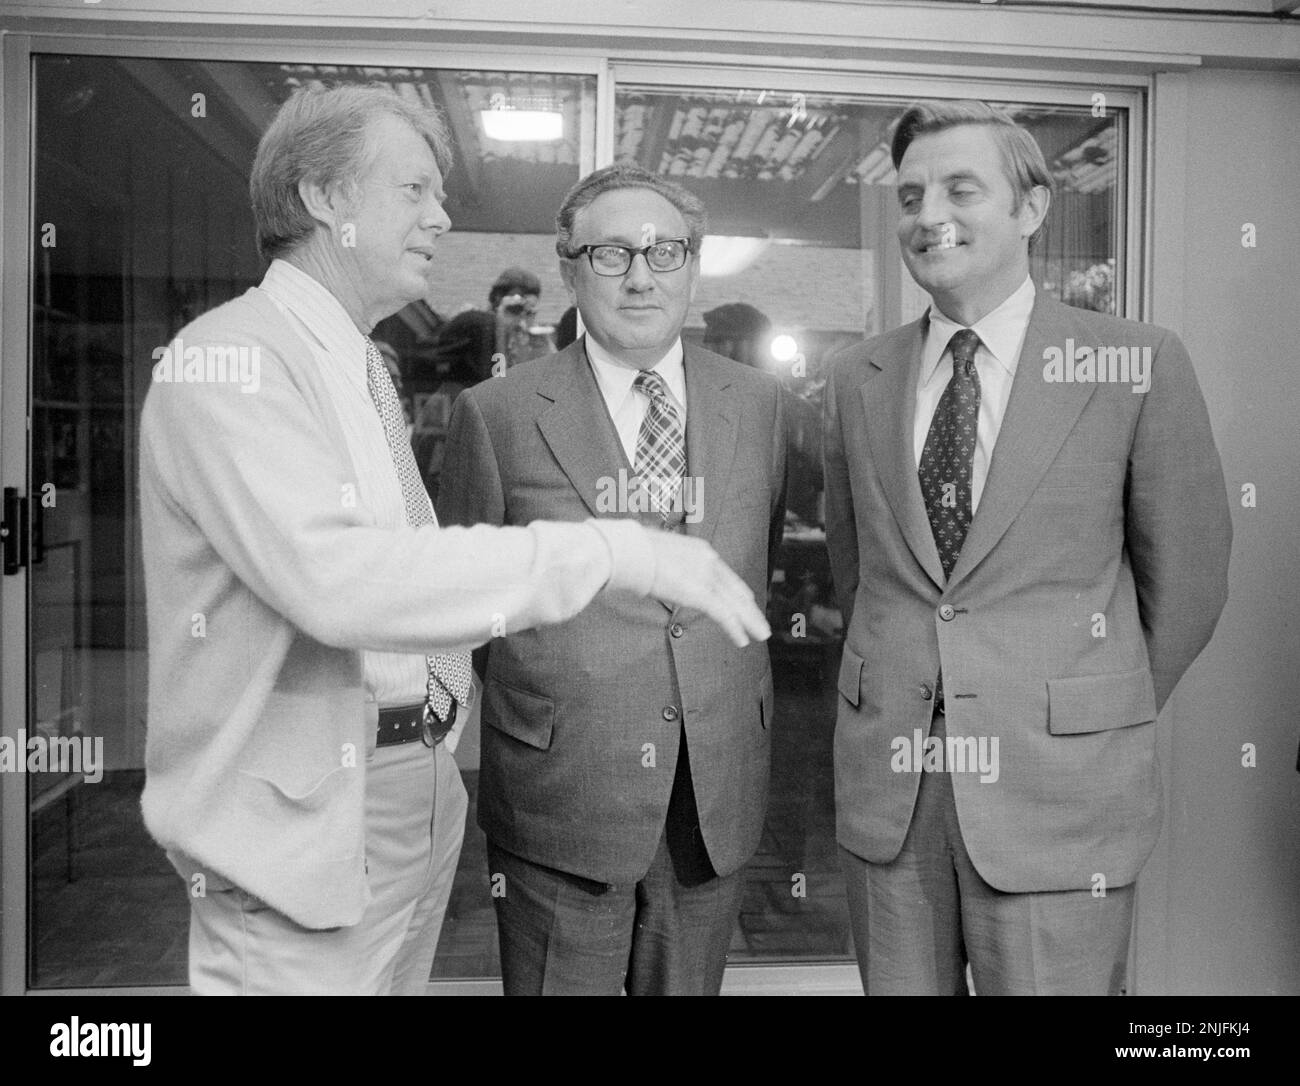 Le président élu, Jimmy carter, et le vice-président élu, Walter Mondale, ont accueilli le secrétaire d'État américain, Henry Kissinger, au domicile de carter à Plains, en Géorgie, pour un exposé sur la politique étrangère. Banque D'Images